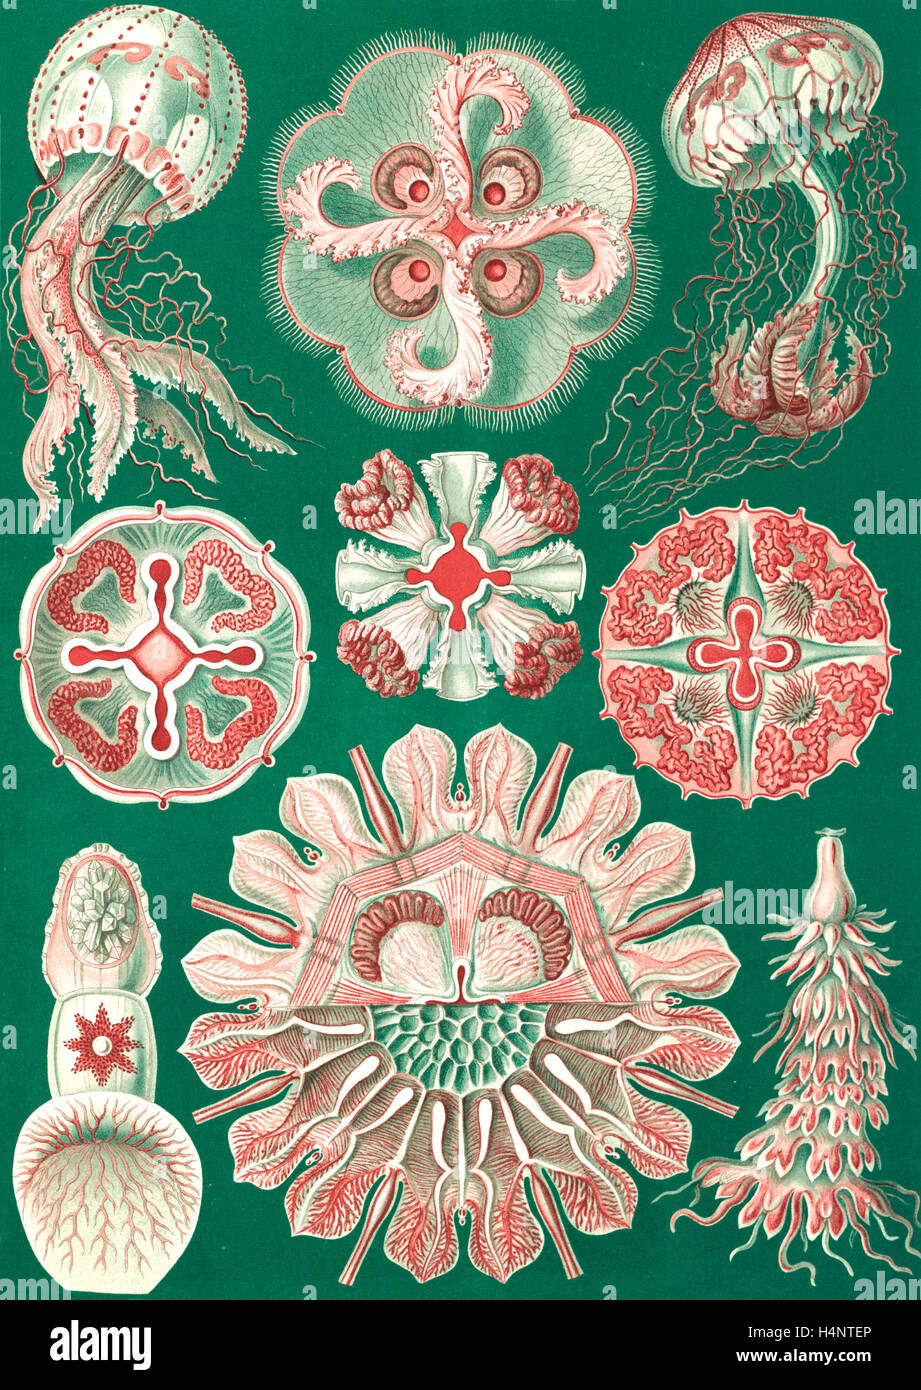 Illustrazione che mostra una varietà di meduse. Discomedusae. - Schweibenquallen, 1 stampa : Litografia, colore ; foglio 36 x 26 cm. Foto Stock